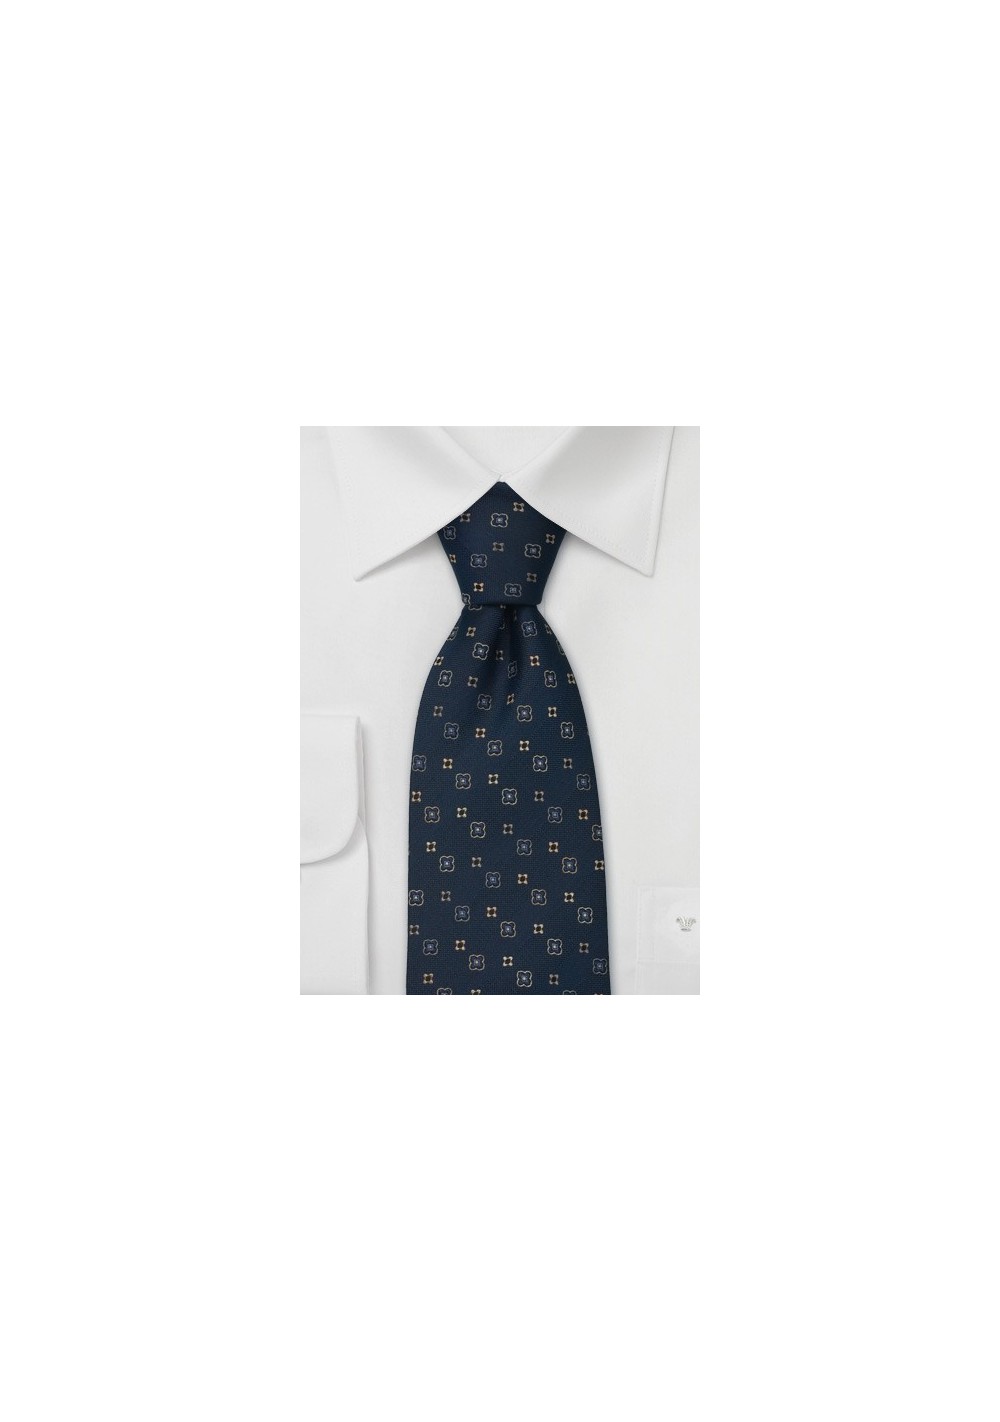 Designer neckties - Floral silk tie by Chevalier